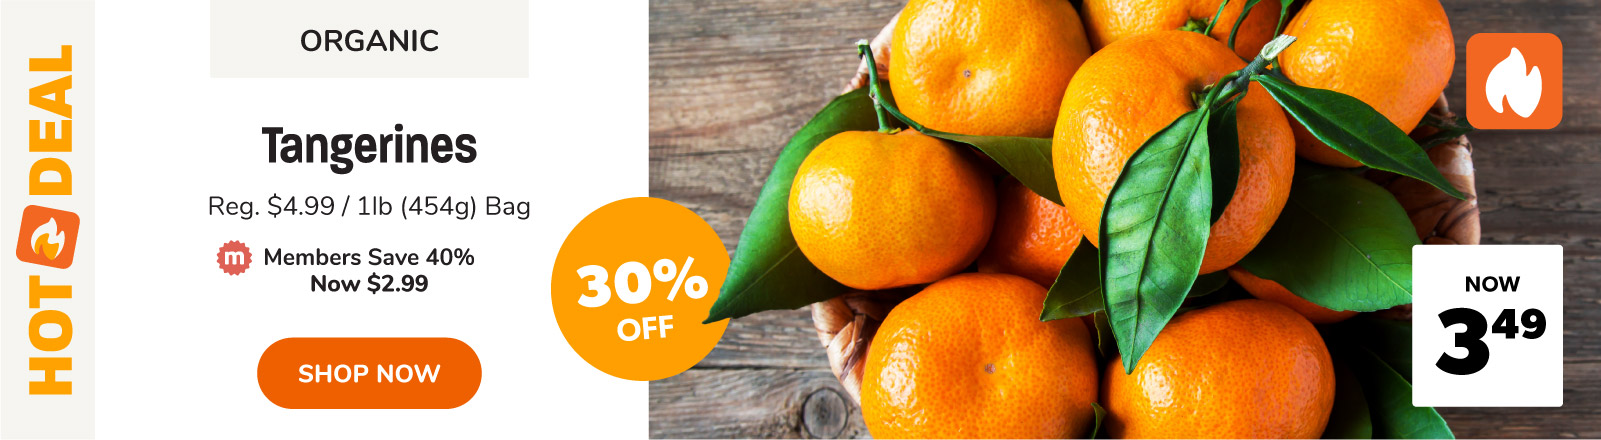 save on organic tangerines this week